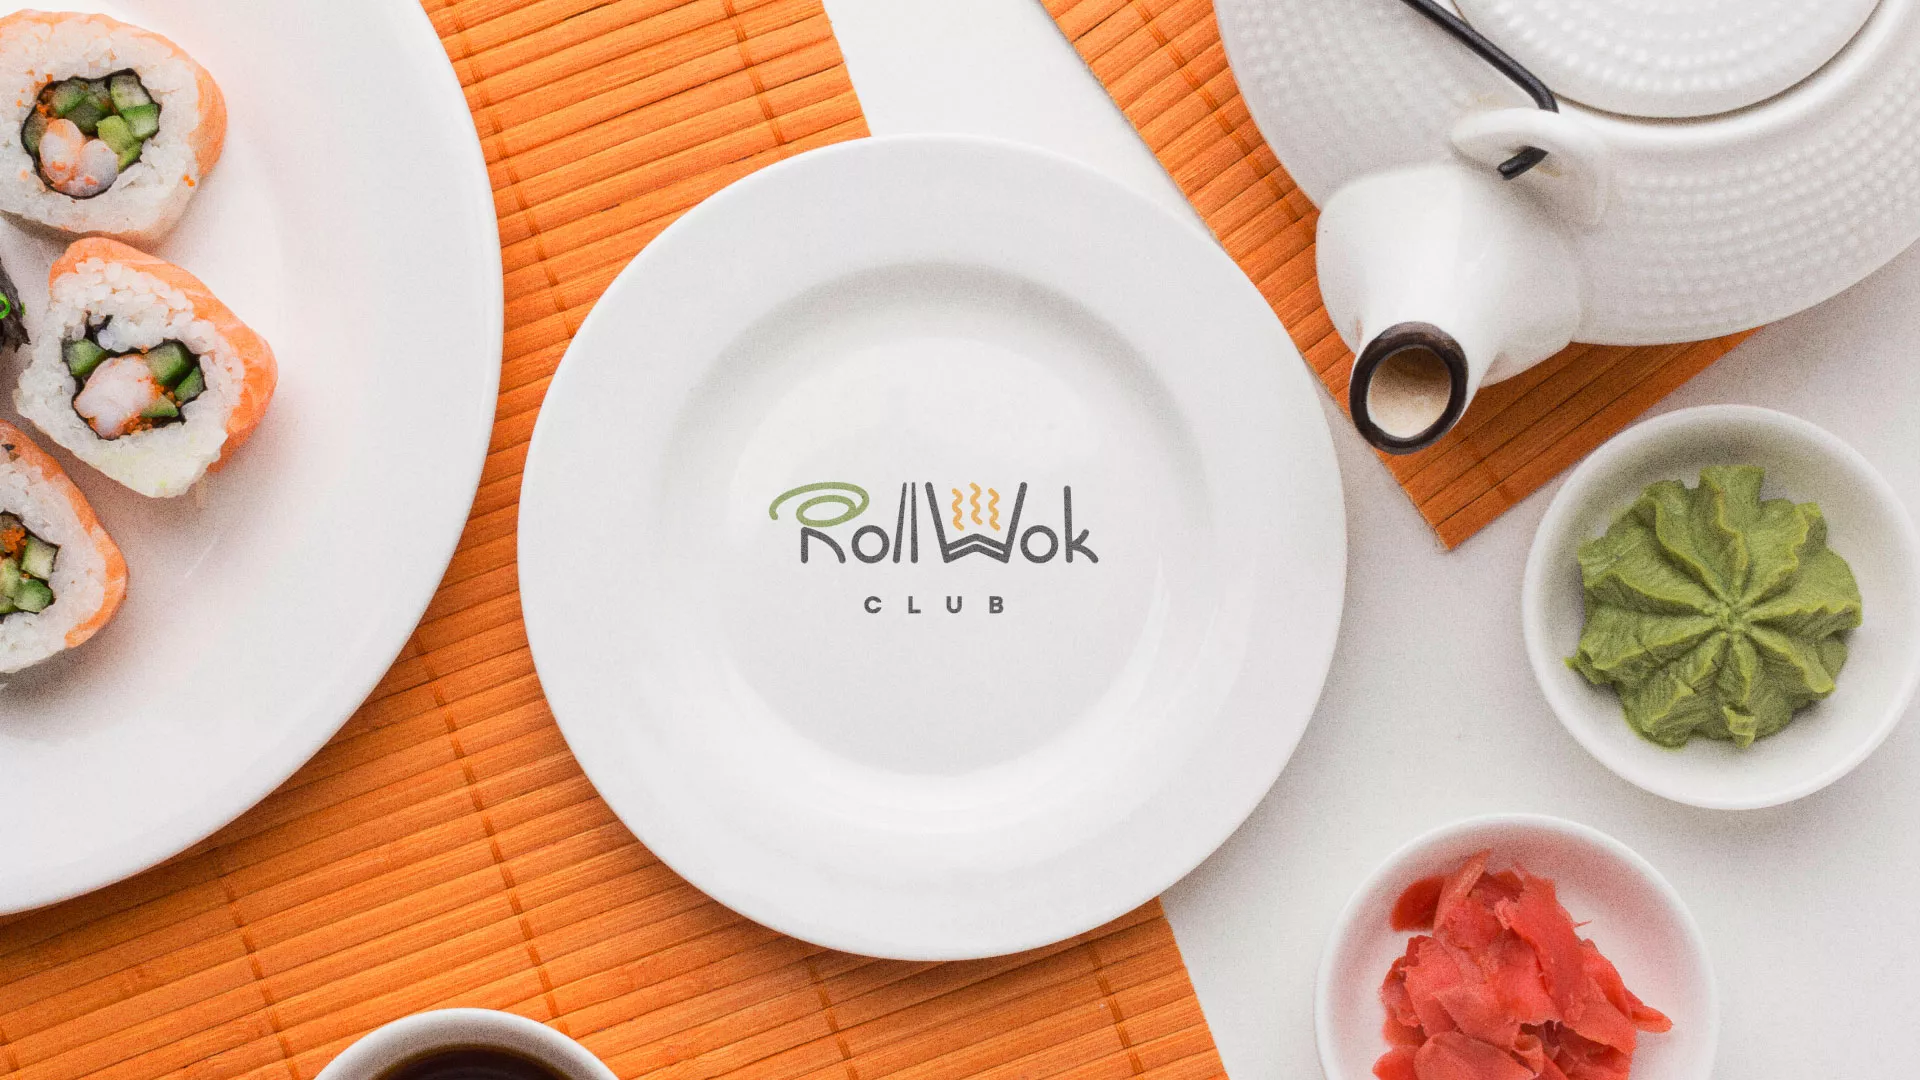 Разработка логотипа и фирменного стиля суши-бара «Roll Wok Club» в Петергофе